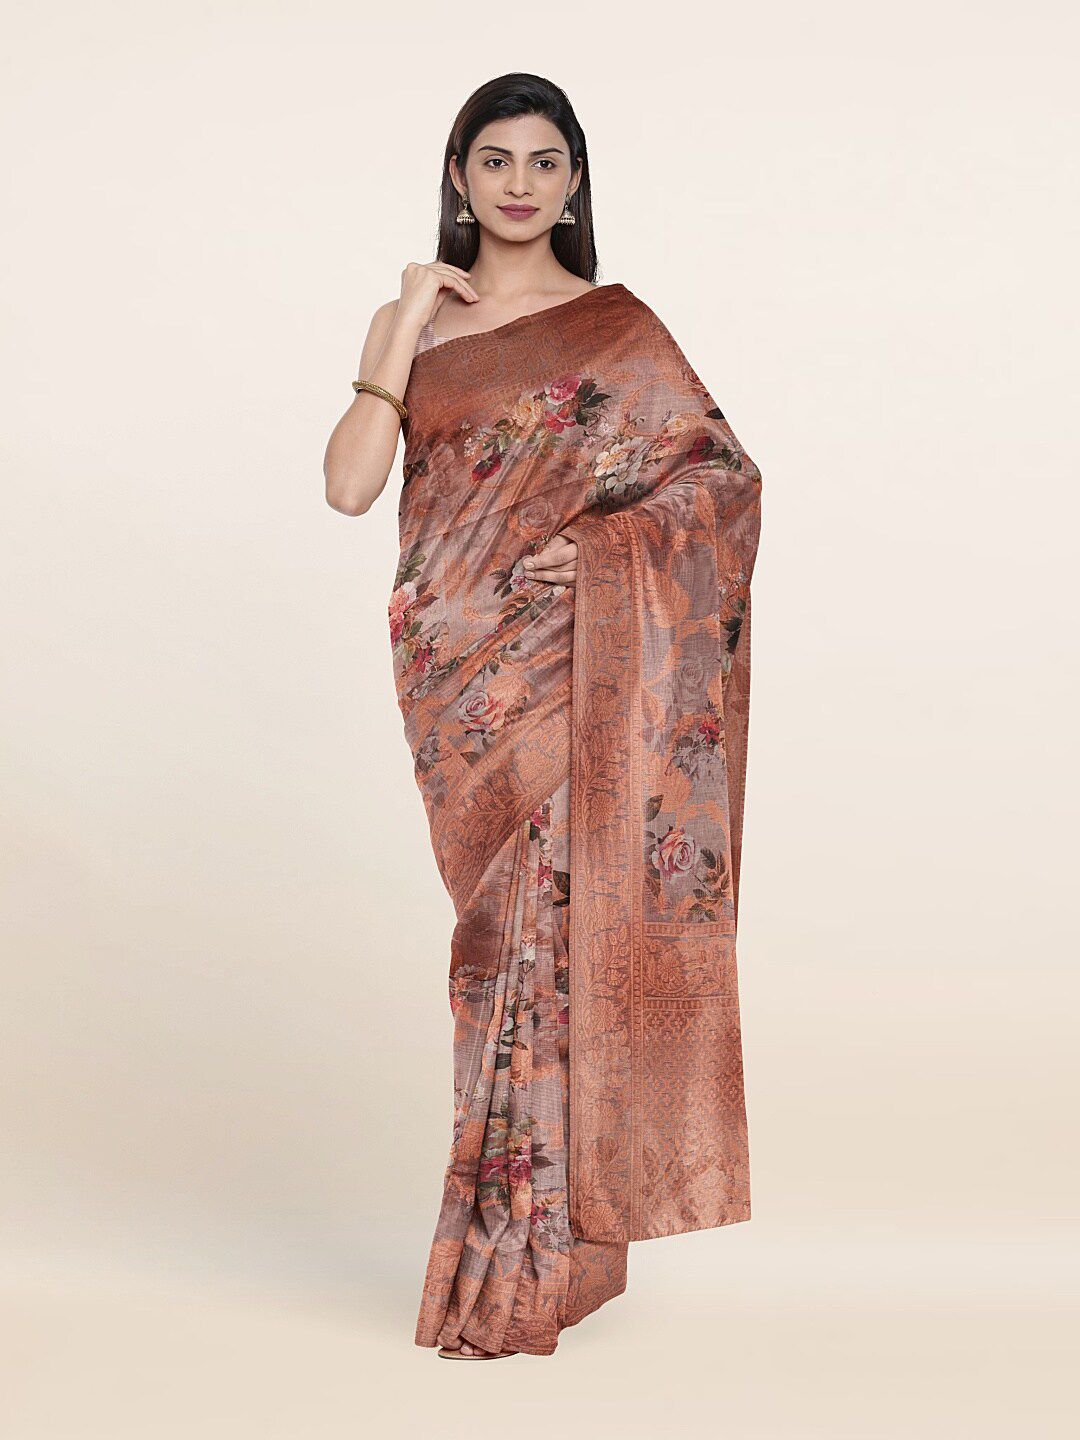 Pothys Brown & Pink Floral Zari Art Silk Saree Price in India